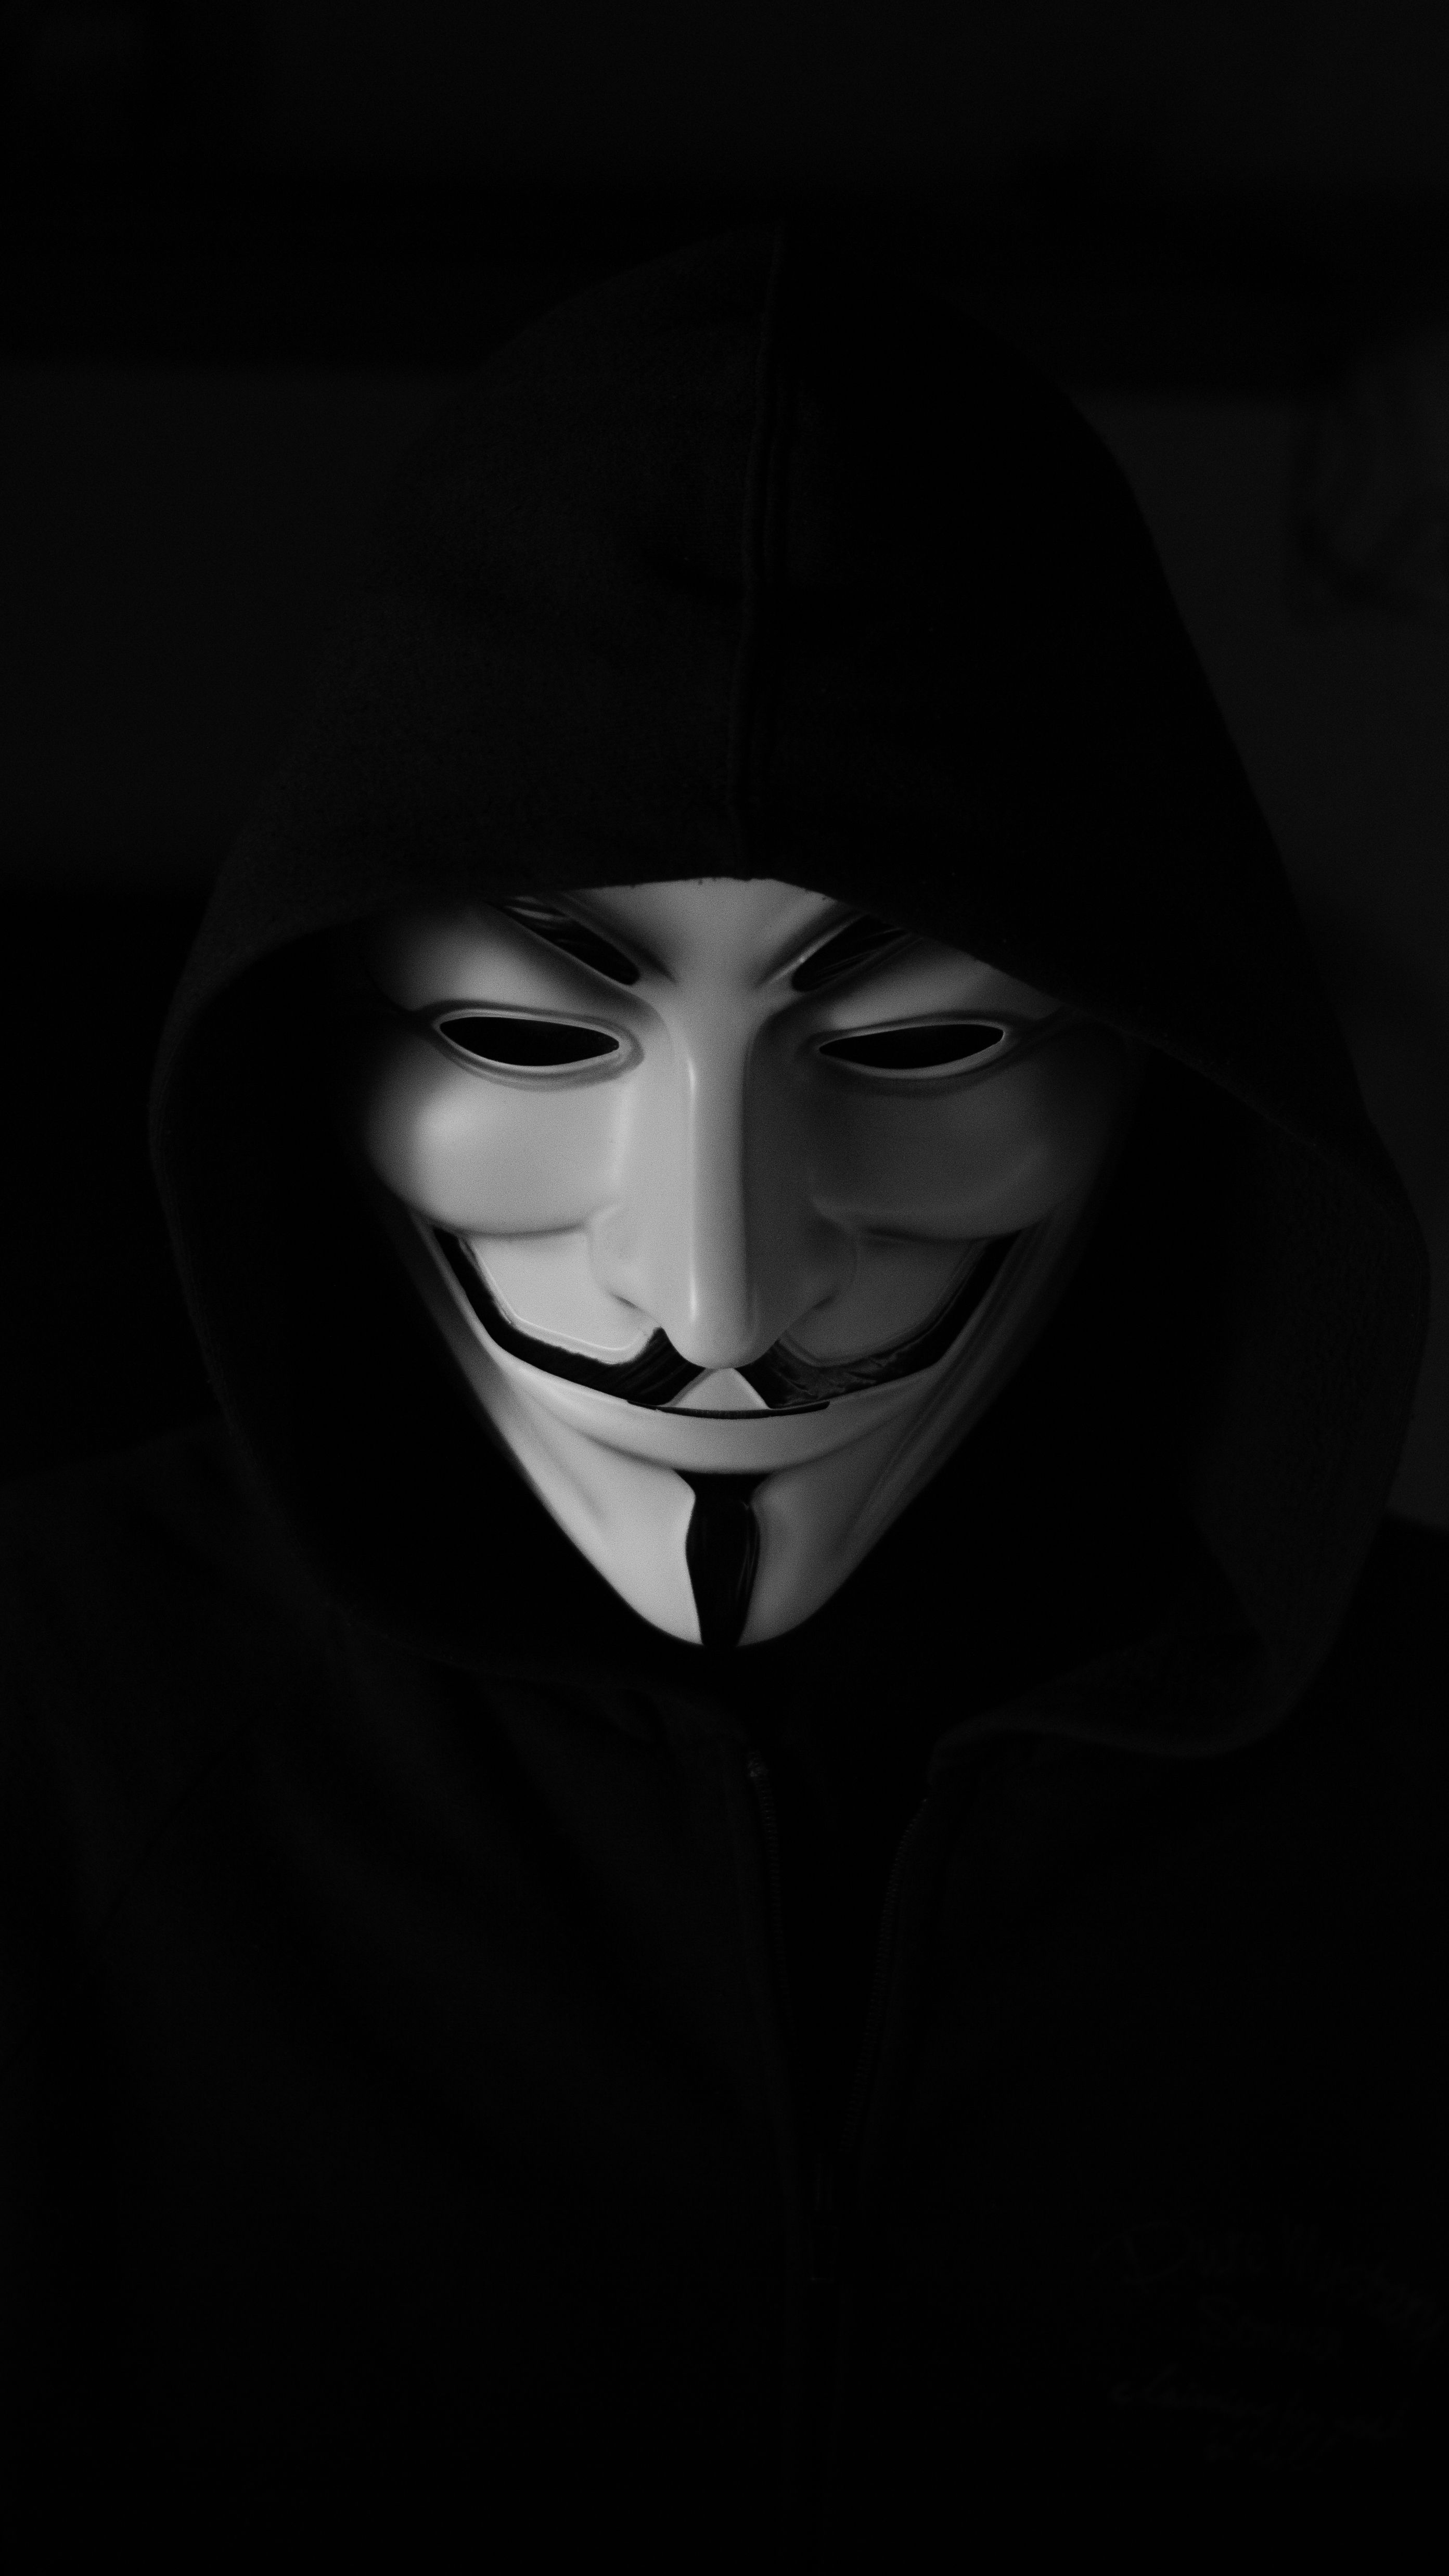 Gruselige Hintergrundbild 2785x4951. Kostenloses Foto zum Thema: anonym, gespenstisch, gruselig, hacker maske, nahansicht, porträt, typ fawkes maske, unheimlich, vertikaler schuss